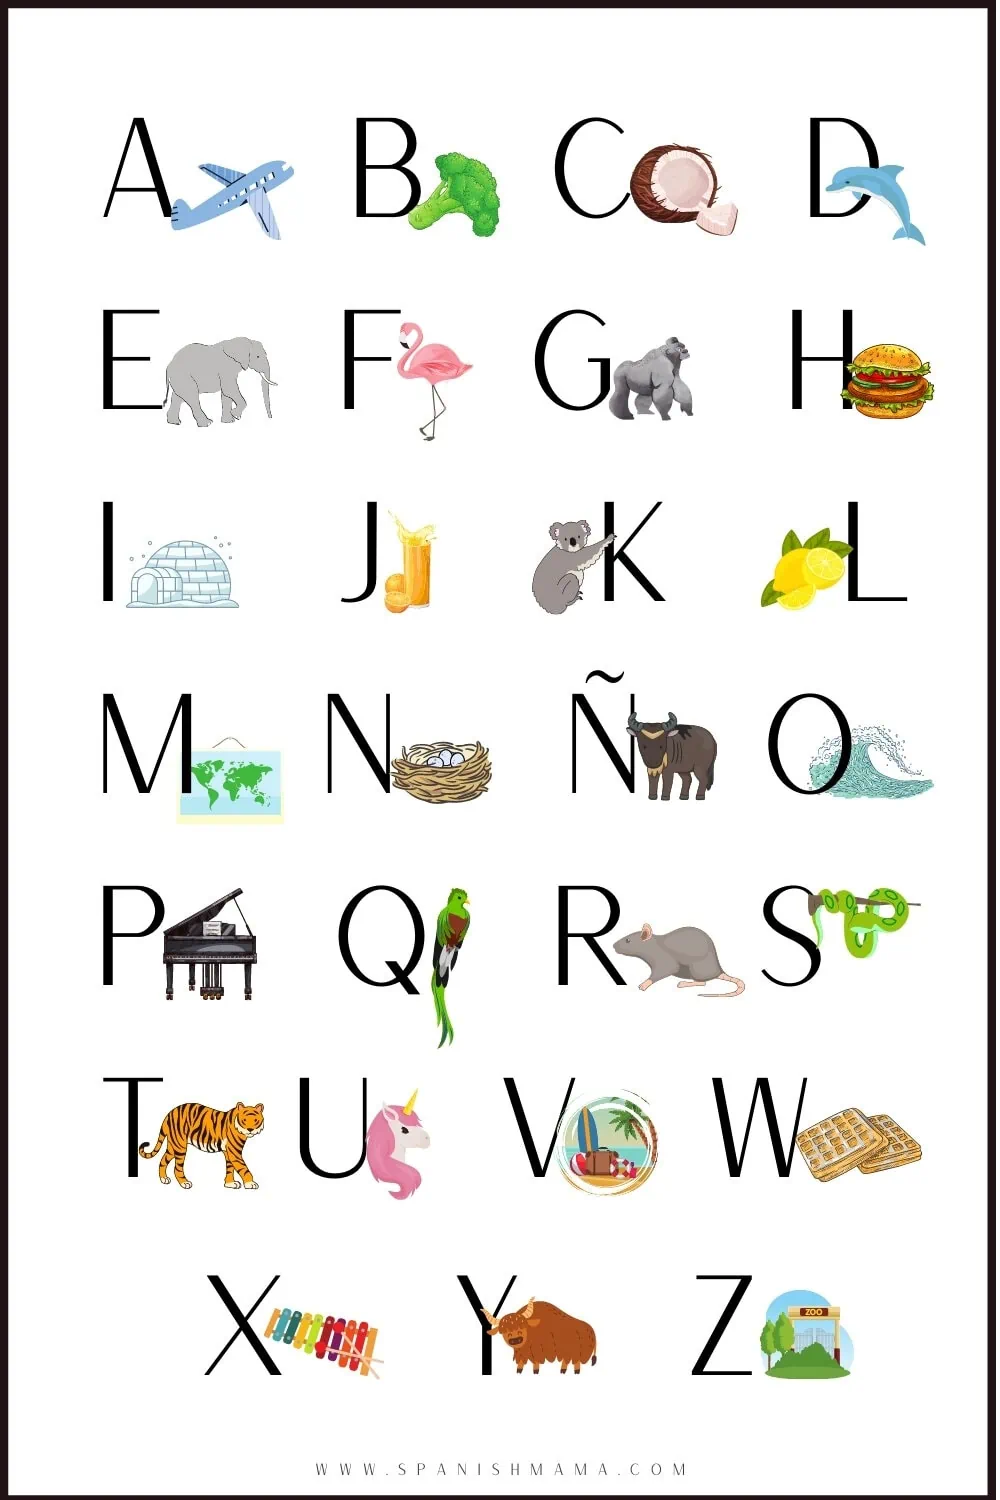 spanish-alphabet-a-z